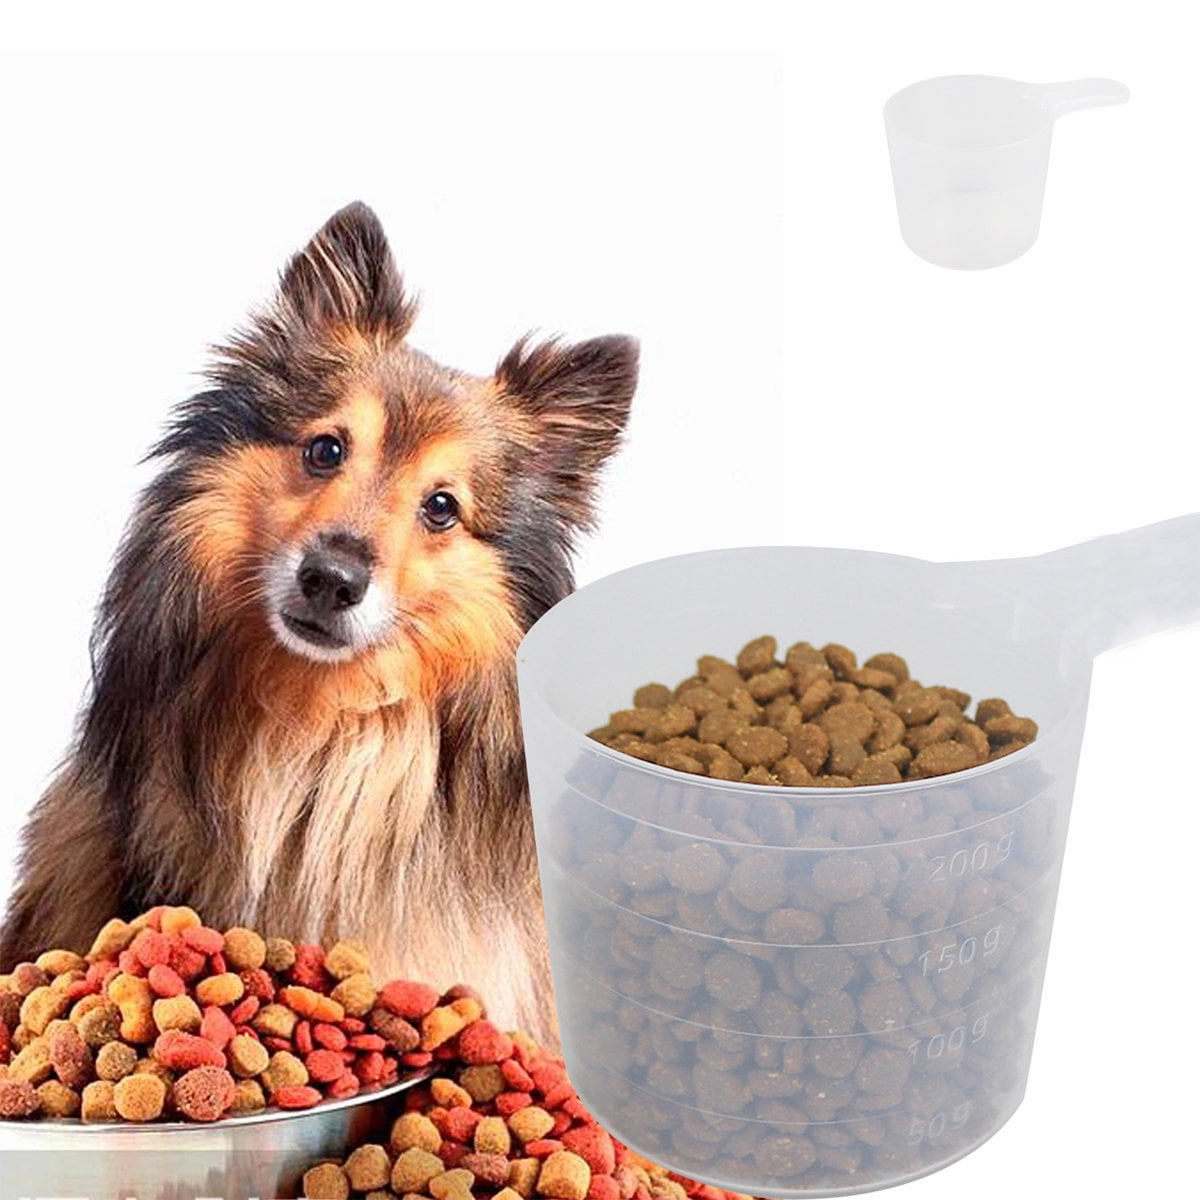 Heldig Pet Food Spoon Plastic Measuring Cup and Spoon SetB 